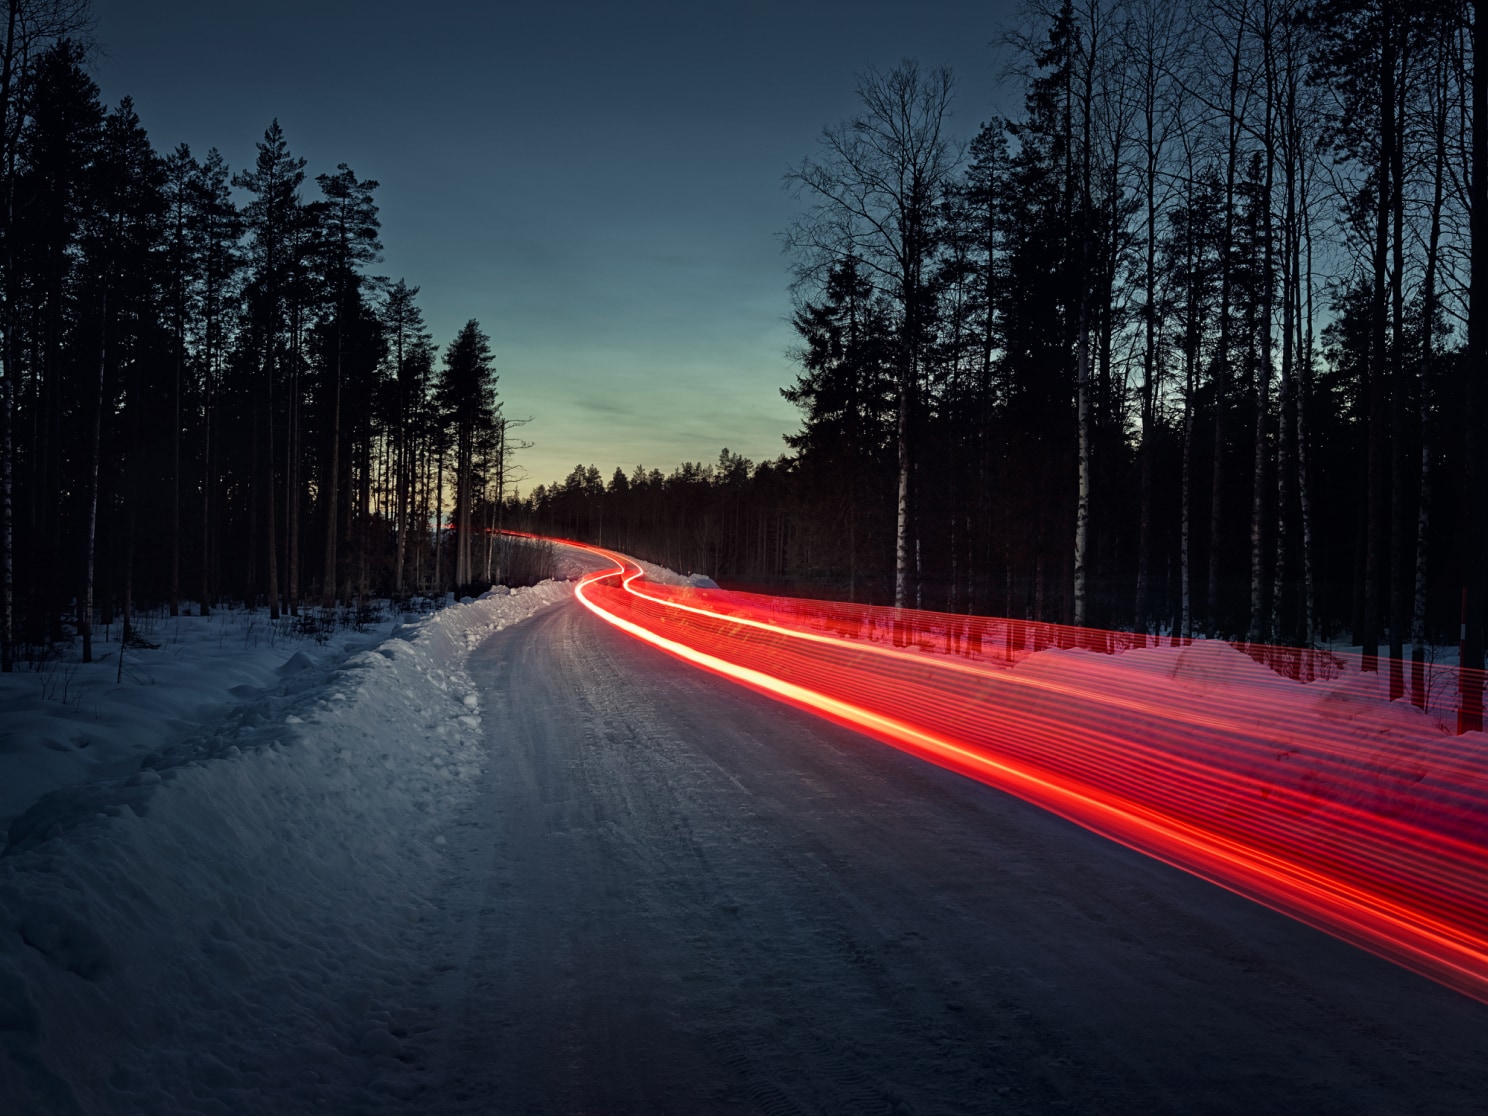 Záber s dlhou expozíciou znázorňujúci stopu červených koncových svetiel na zľadovatenej ceste.